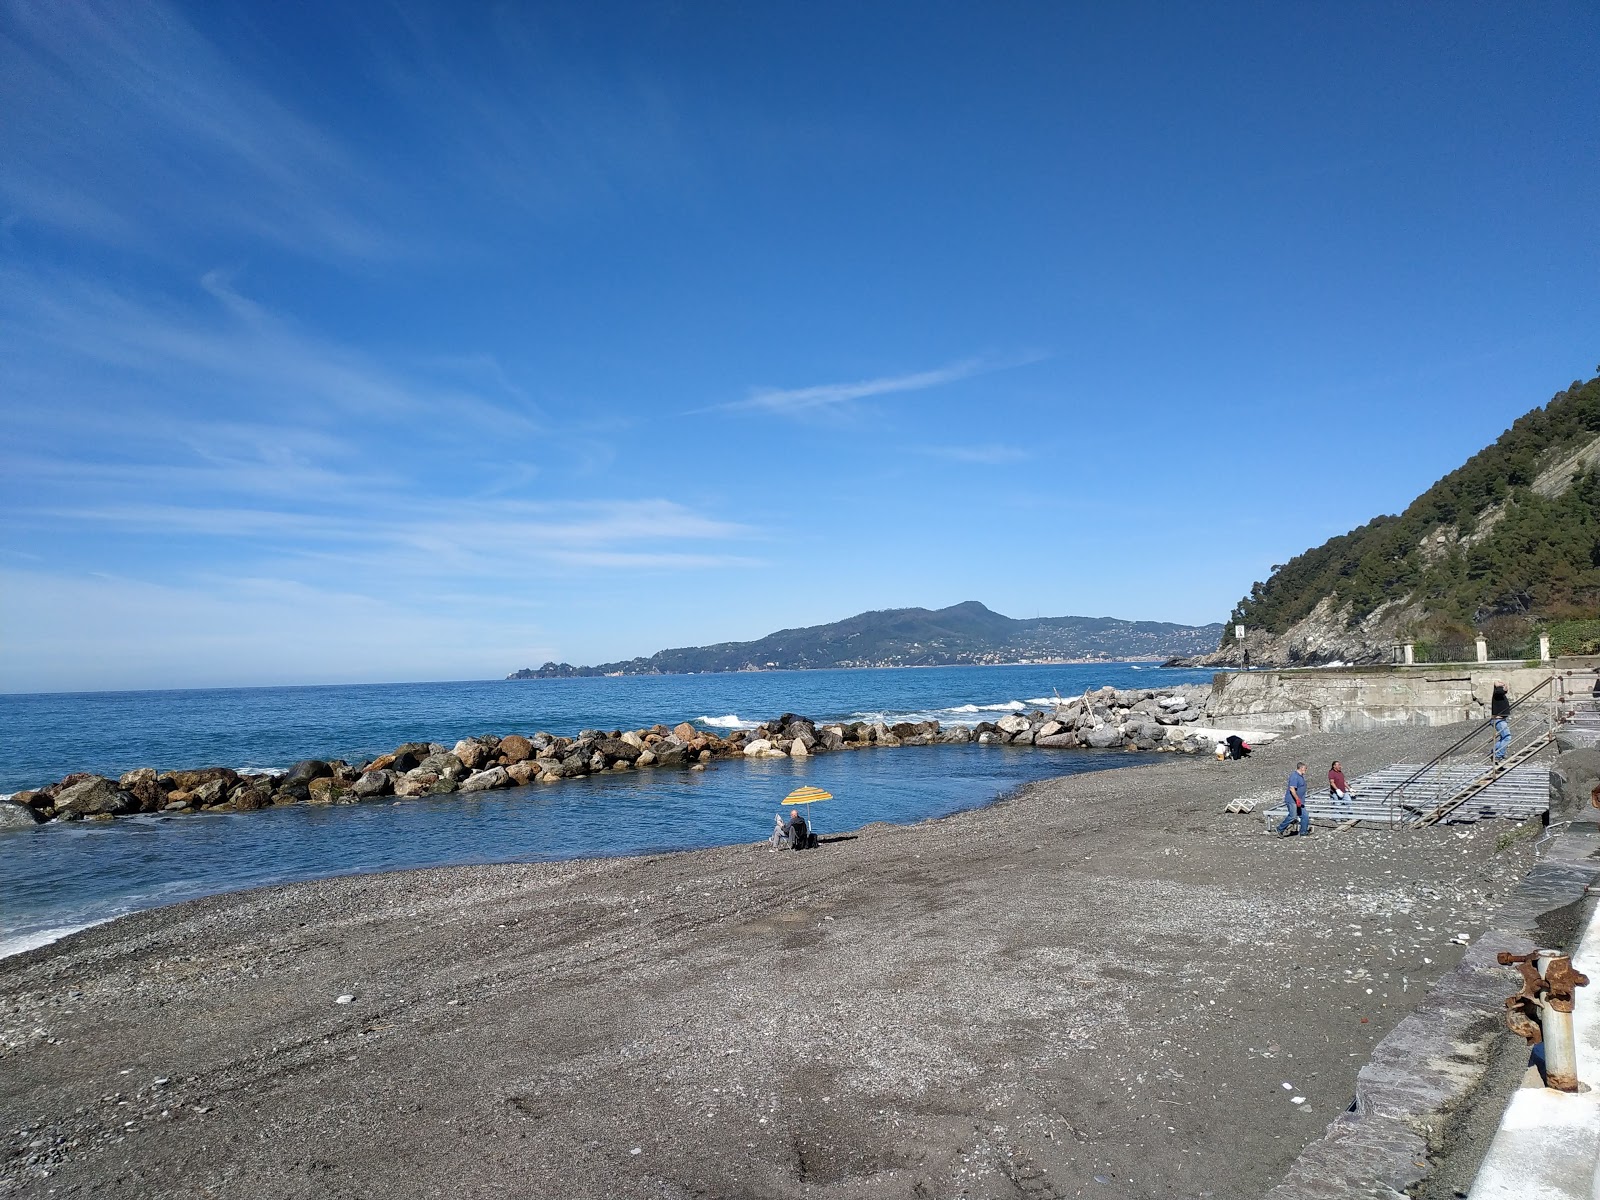 Photo of La spiaggia di Preli a Chiavari with blue pure water surface